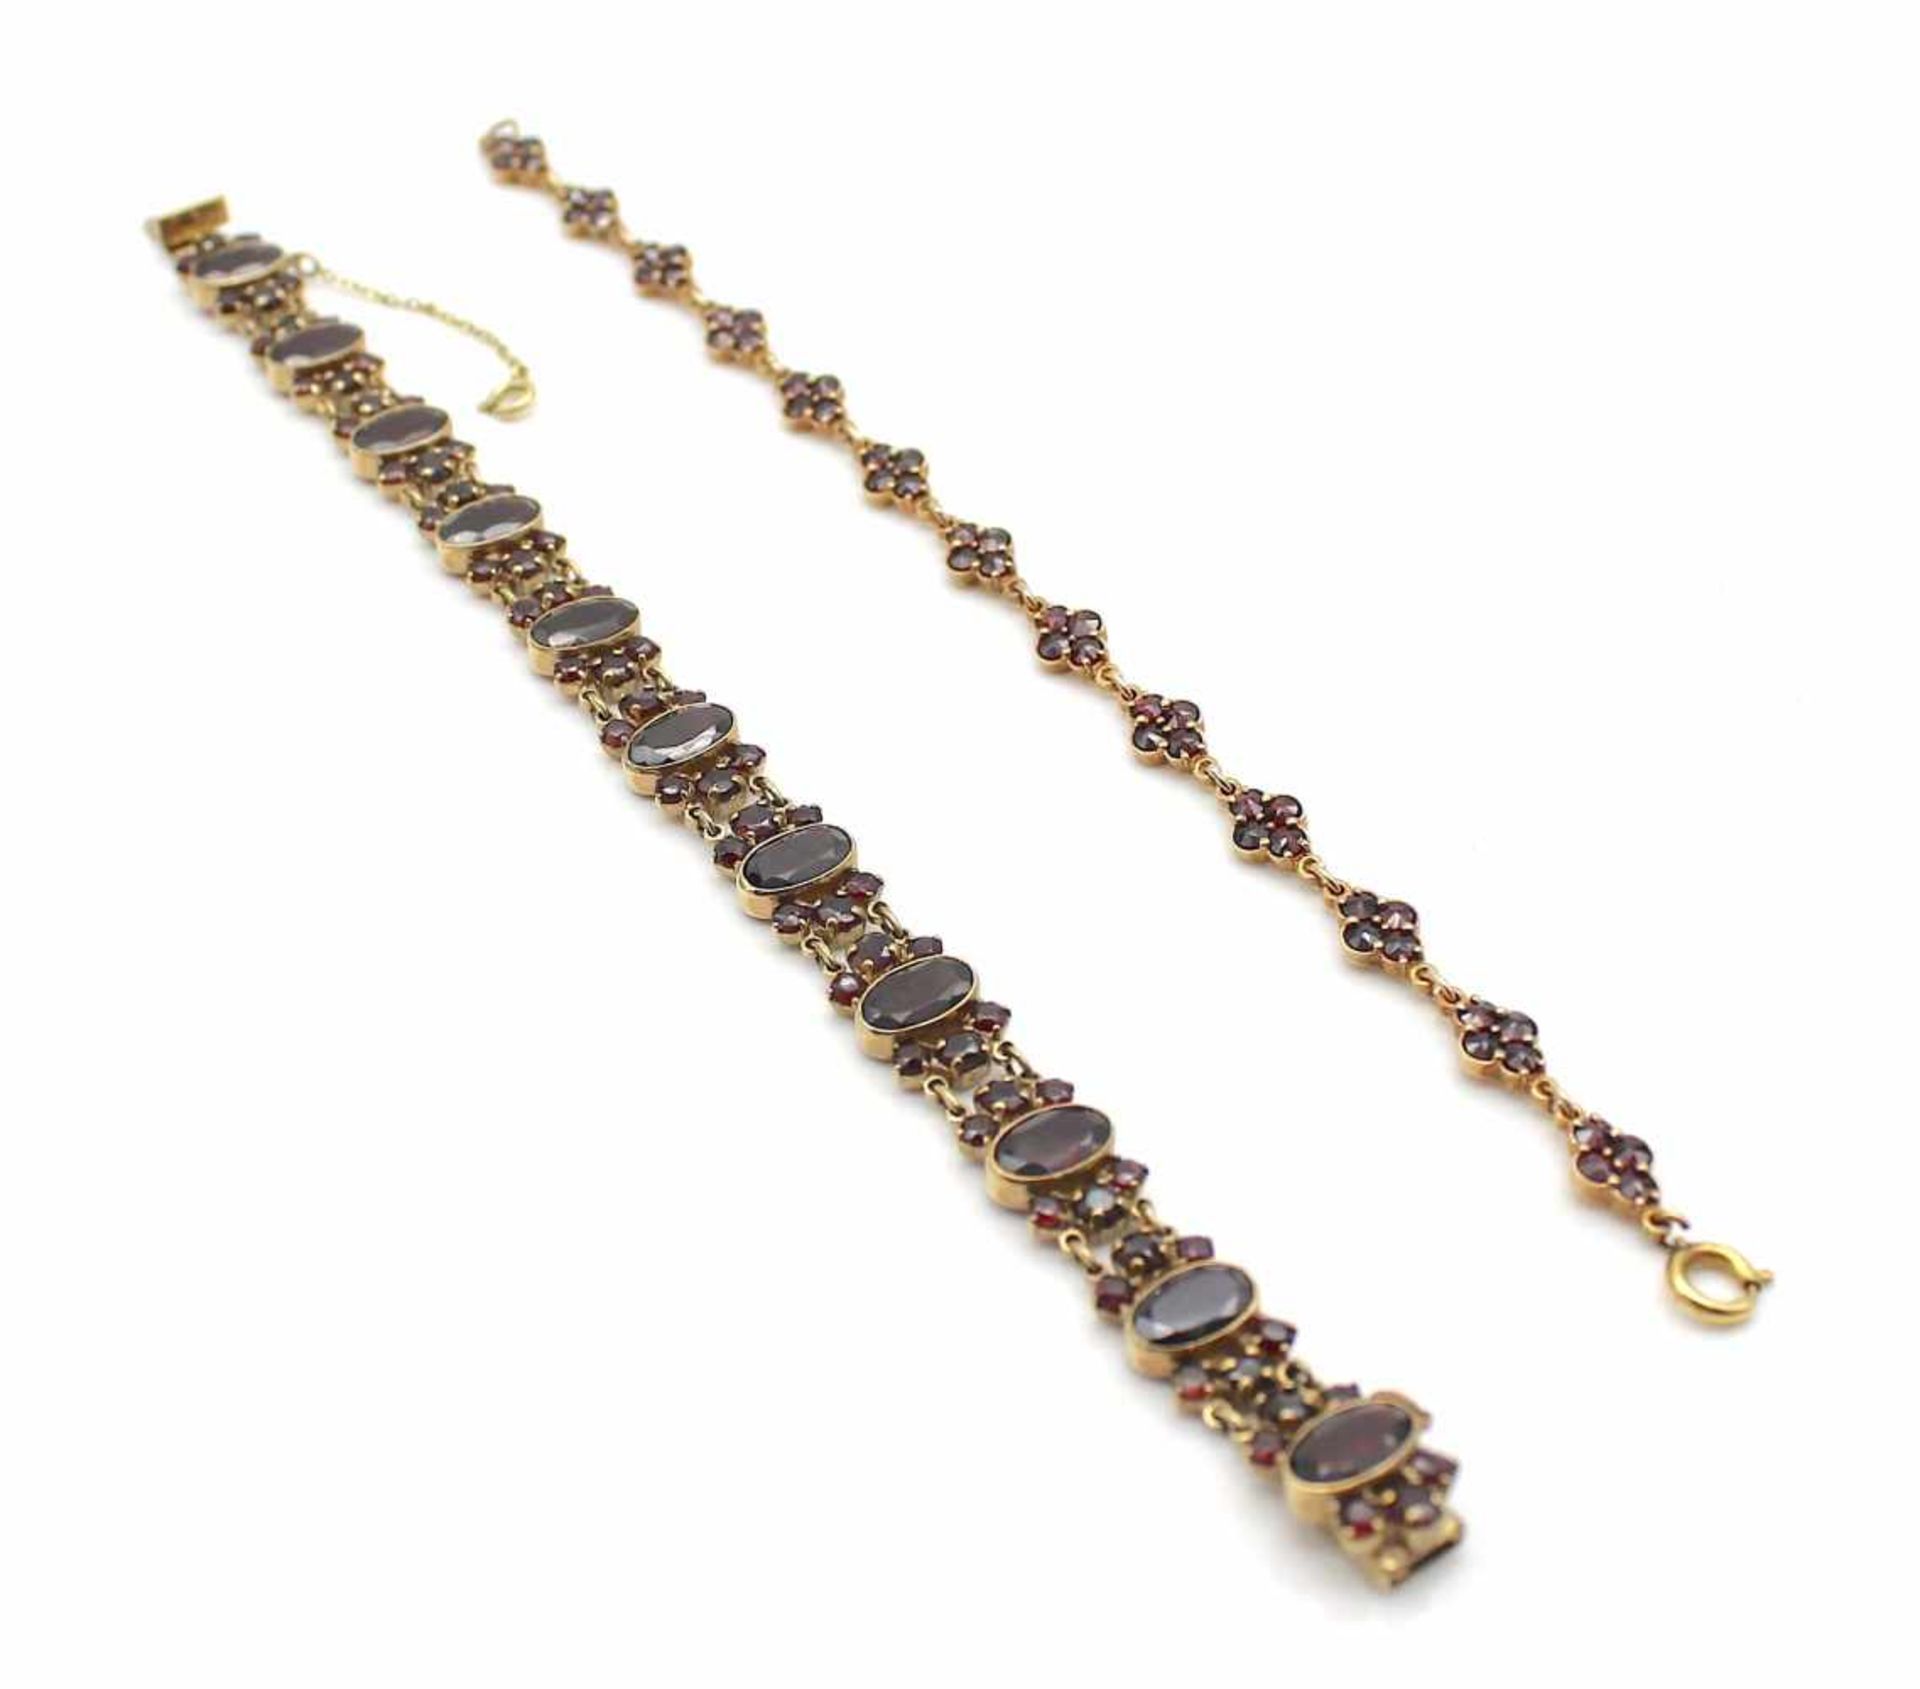 2 Armbänder aus 333er Gold mit Granat. Gesamtgewicht: 27,8 g, Längen: 19 cm 2 bracelets in 333 gold